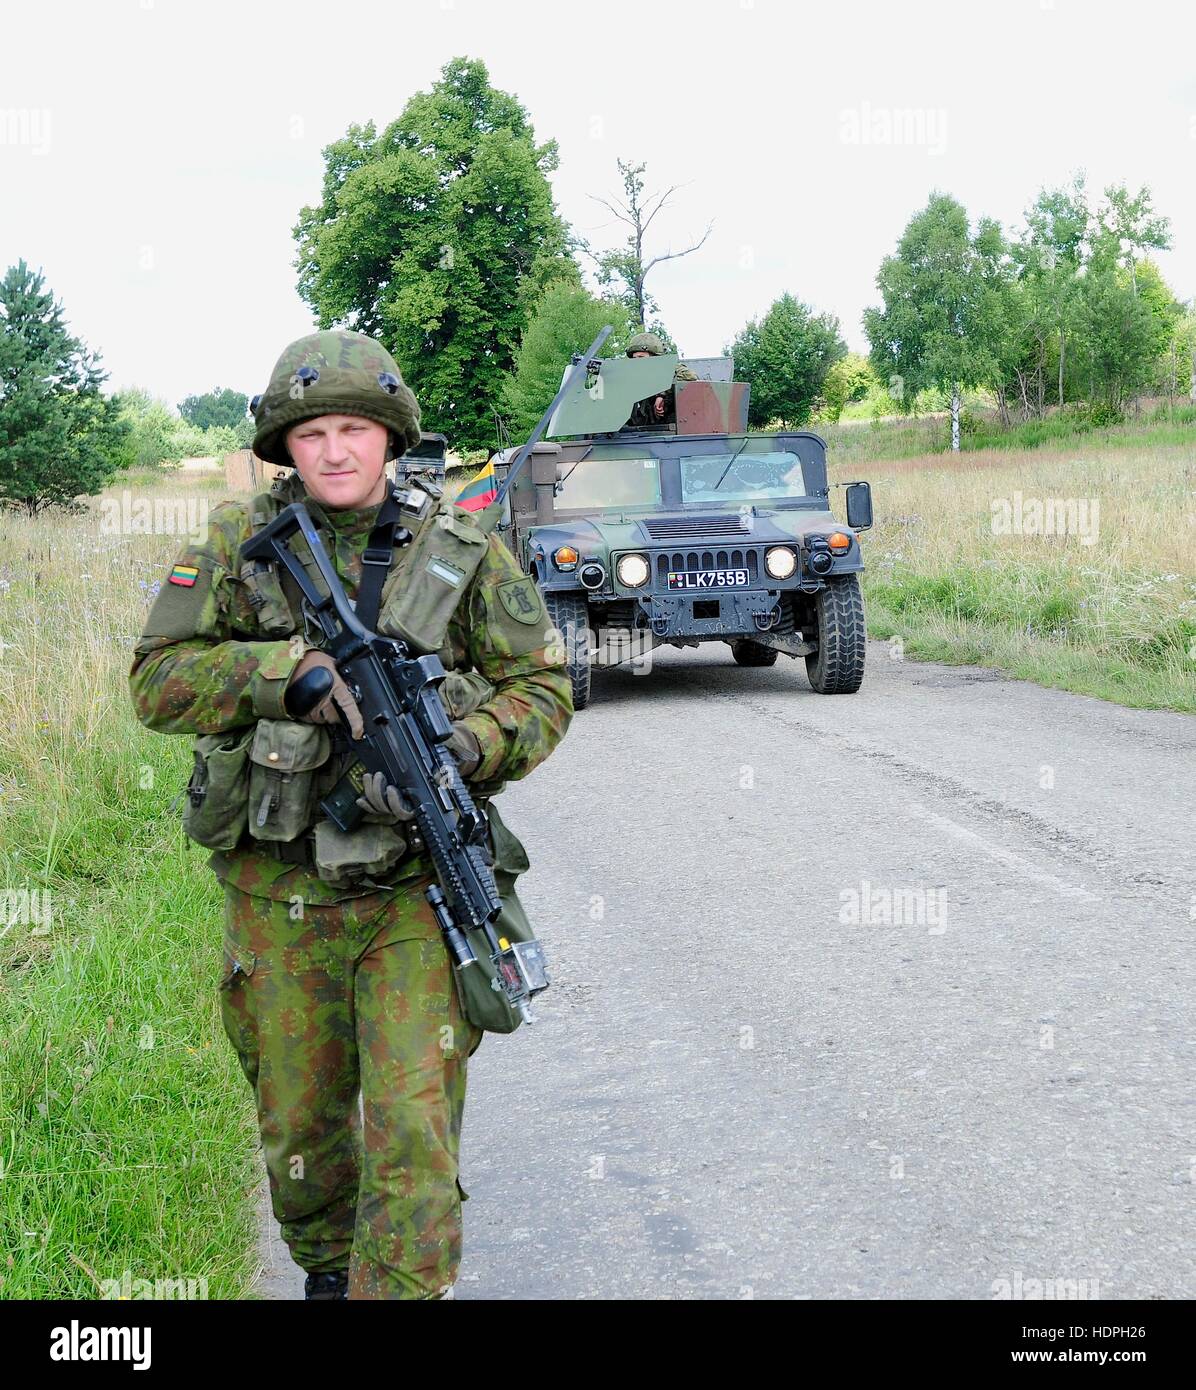 Un soldato lituano conduce un Humvee a piedi durante una rapida Trident situazionale esercizio di formazione a livello internazionale di mantenimento della pace e Centro sicurezza Luglio 25, 2015 in Yavoriv, Ucraina. Foto Stock